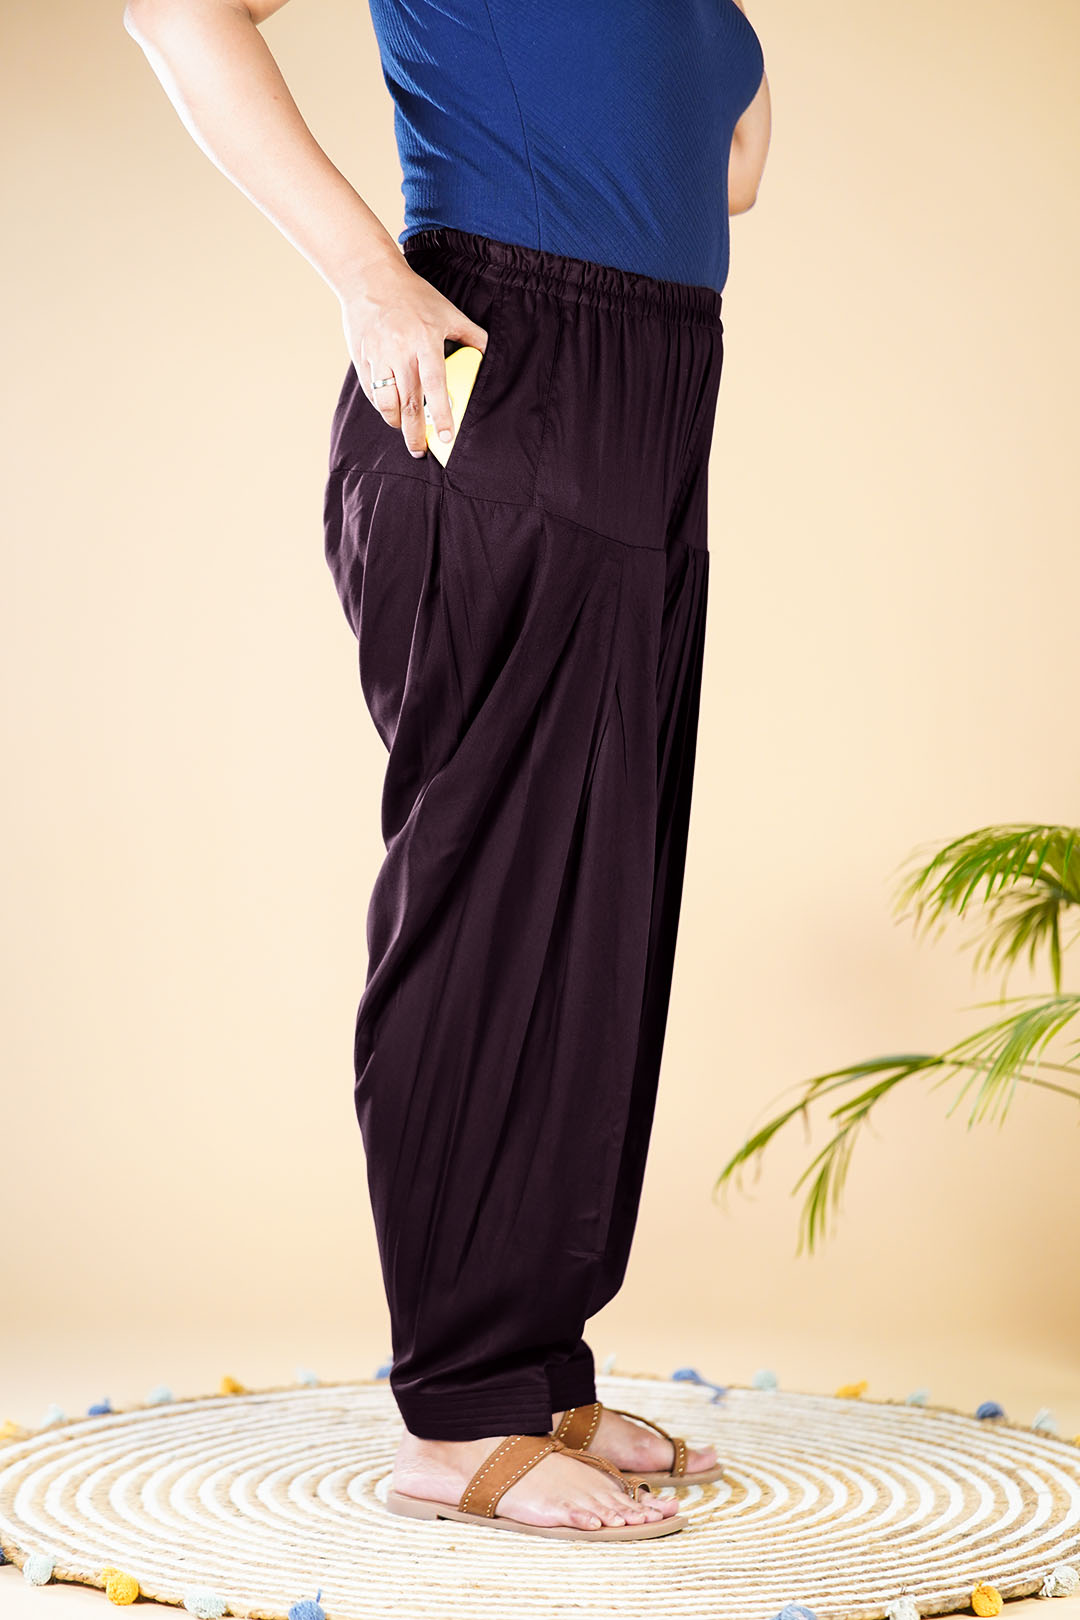 Haband Women's 2-Pc. Fleece Set, Embroidered Top & Elastic Waist Pants